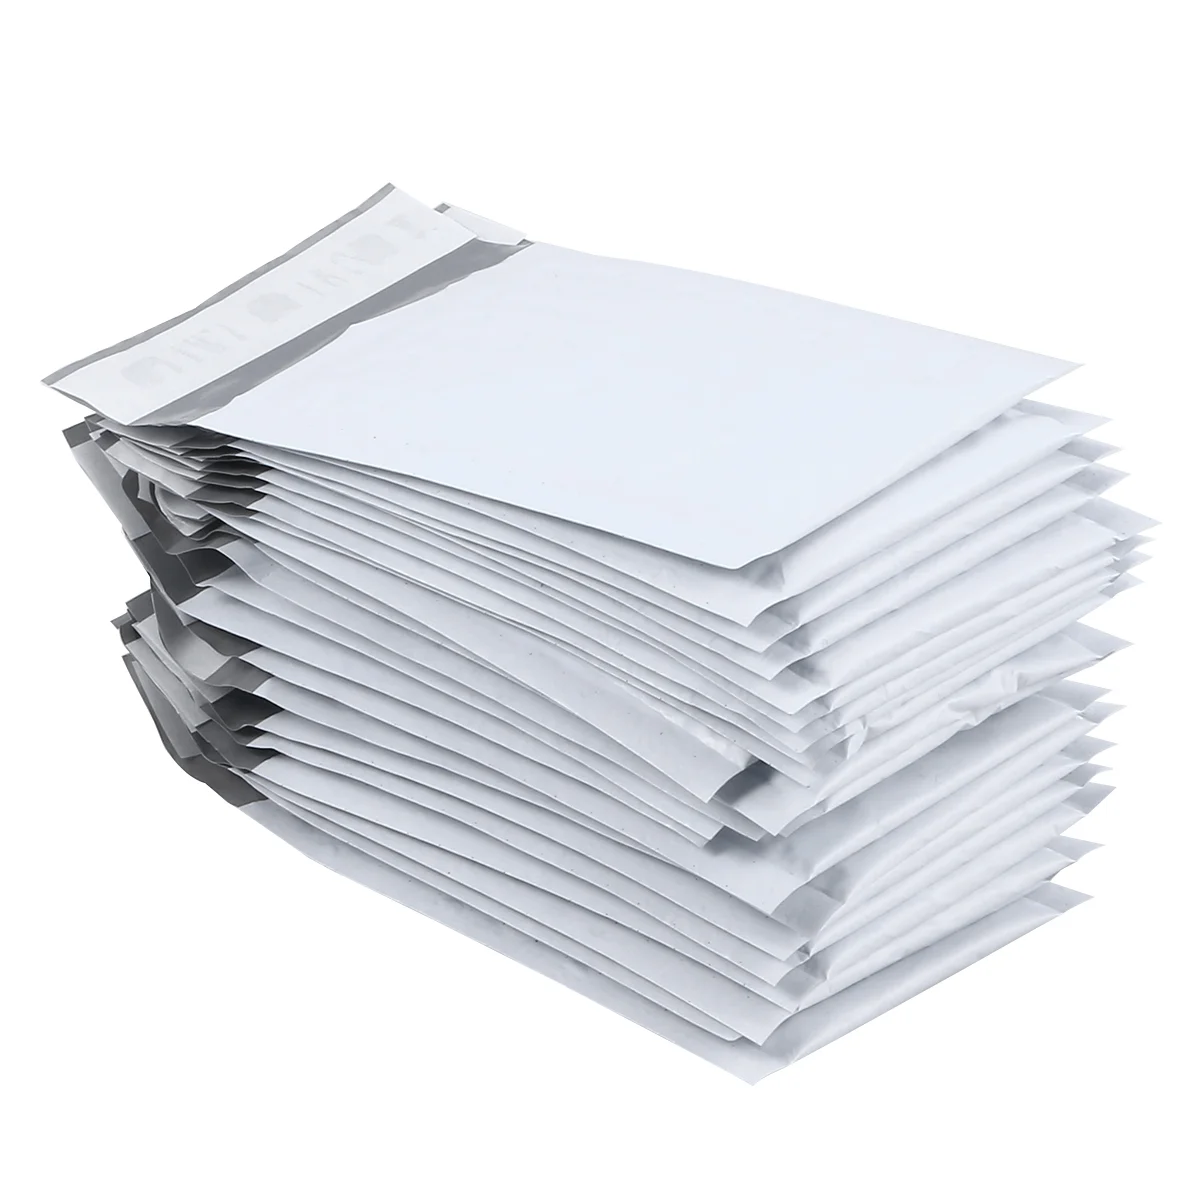 

Конверты Mailers конверты с мягким вкладышем, маленькие полиэтиленовые пакеты 6X9 6X10, конверты для почтовых отправлений A4, самозакрывающиеся